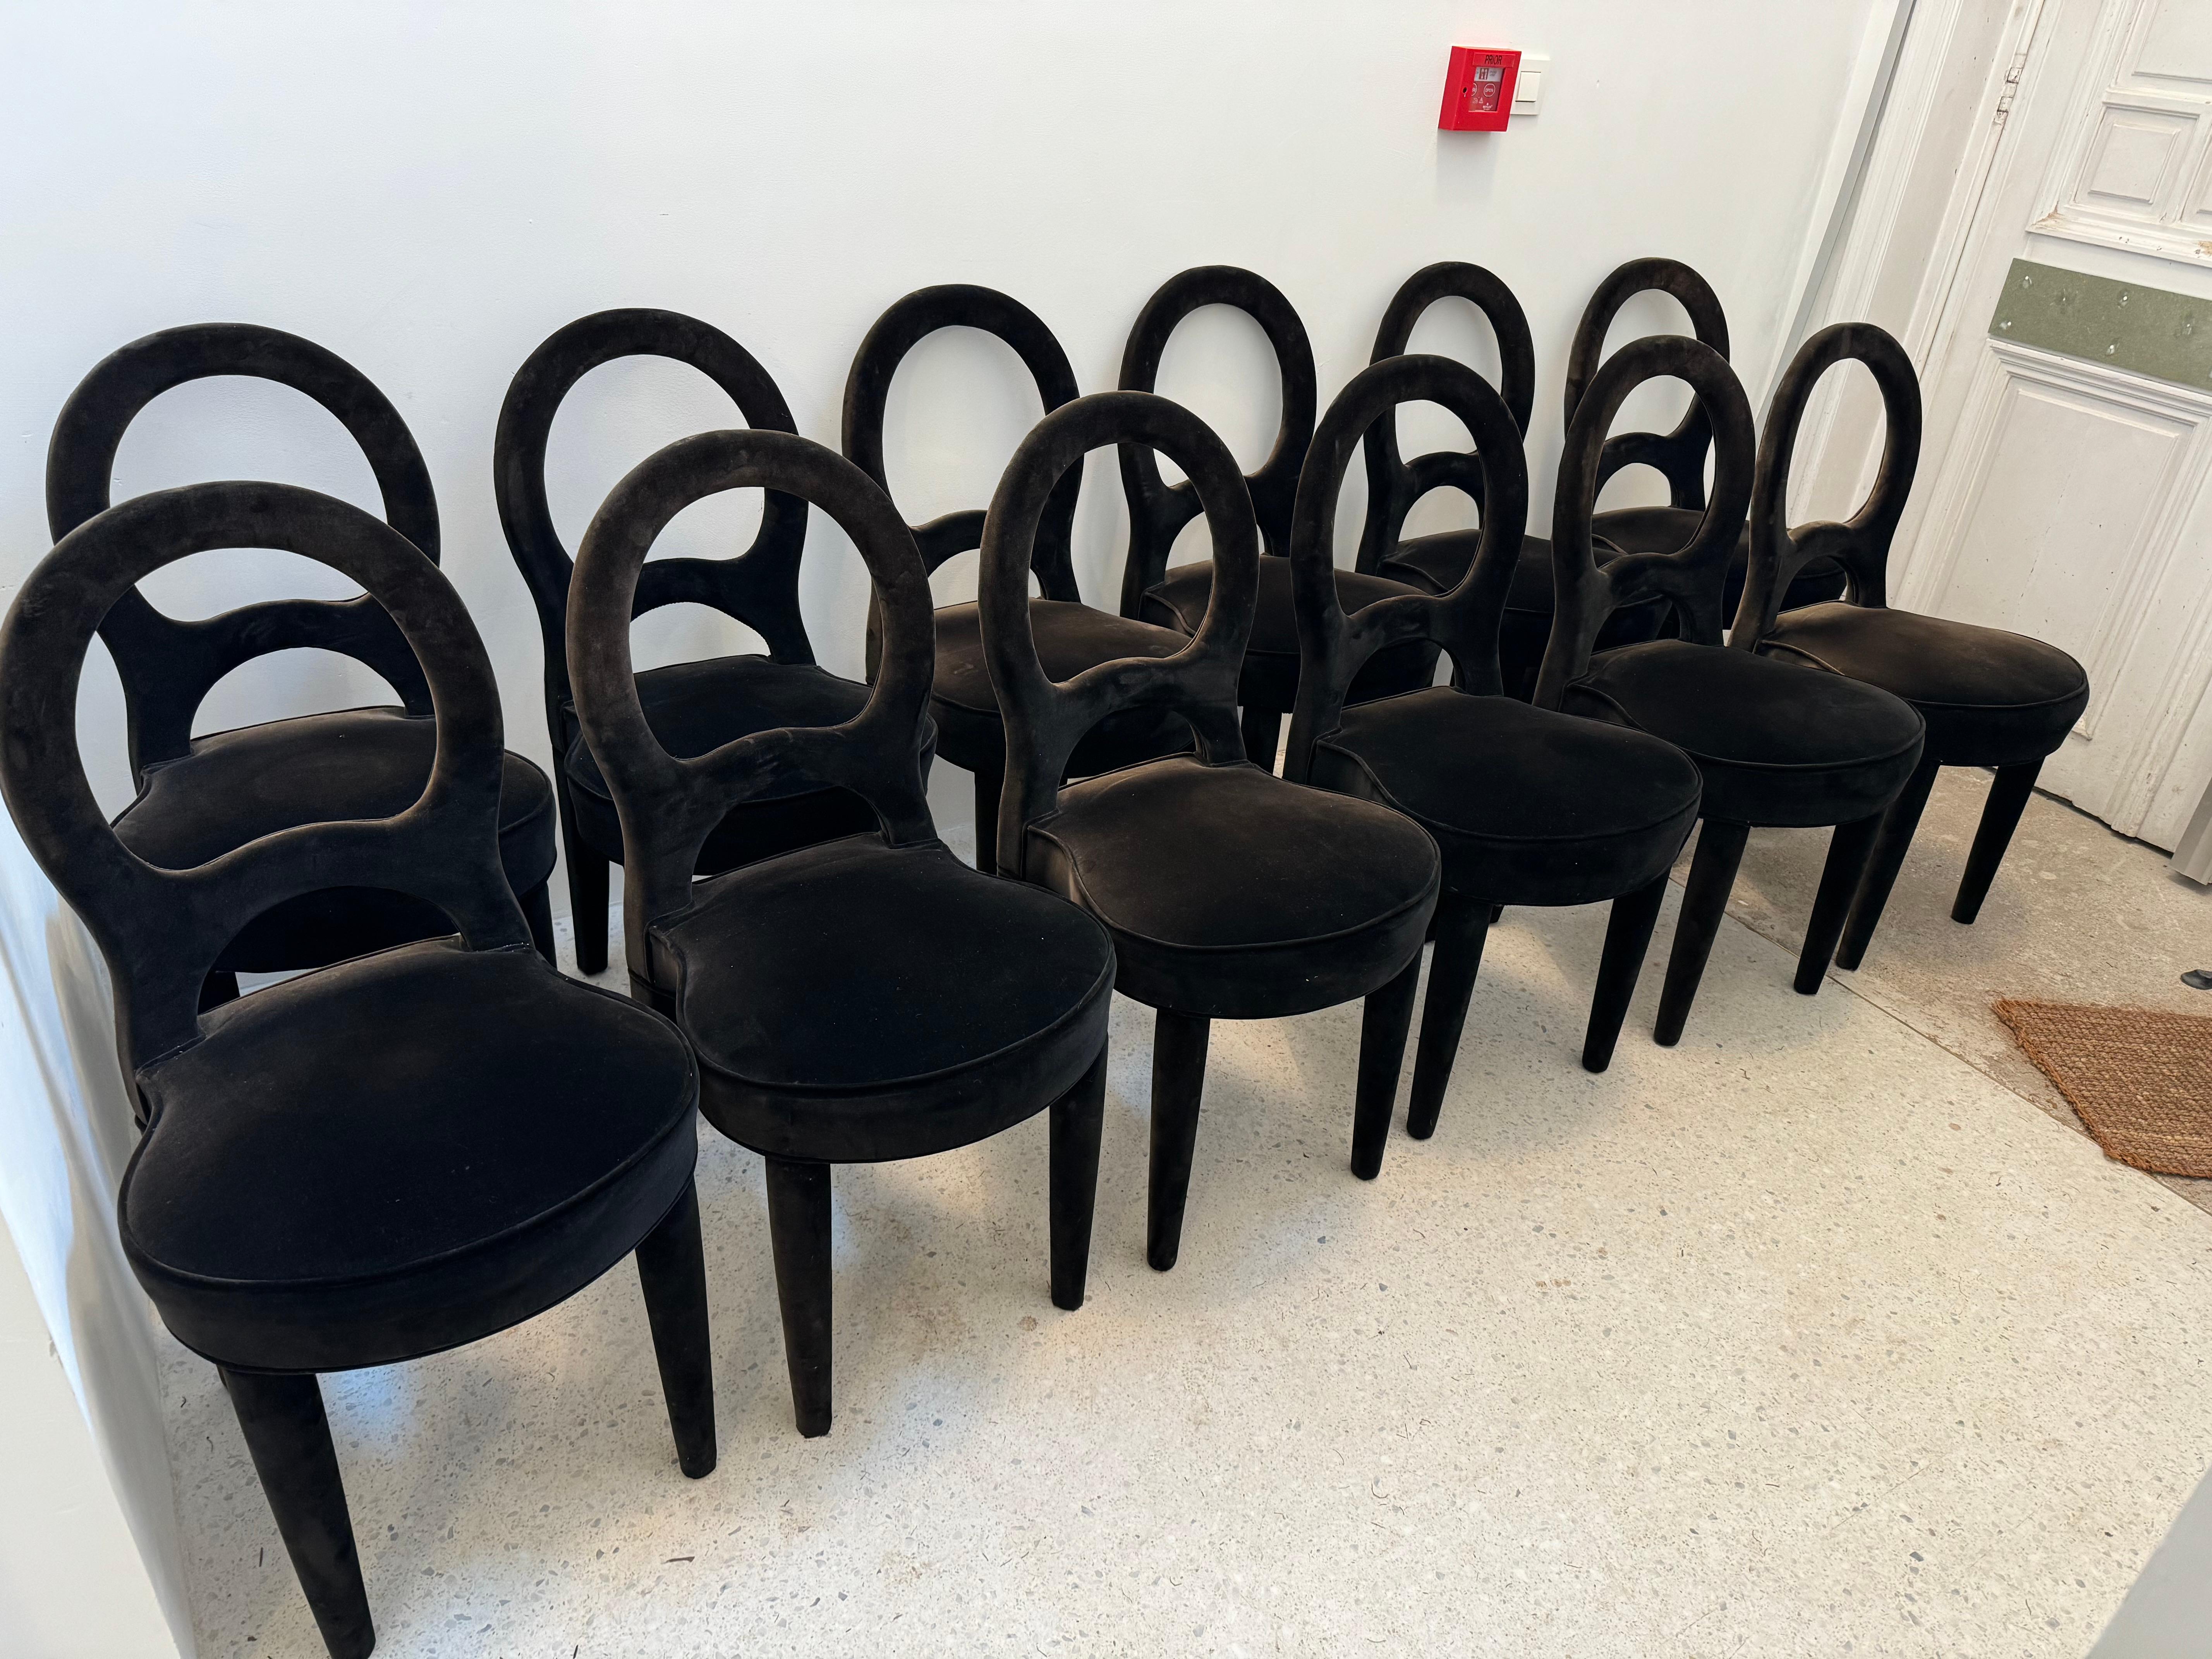 Des chaises très uniques et originales. Parfait pour tout type d'intérieur.